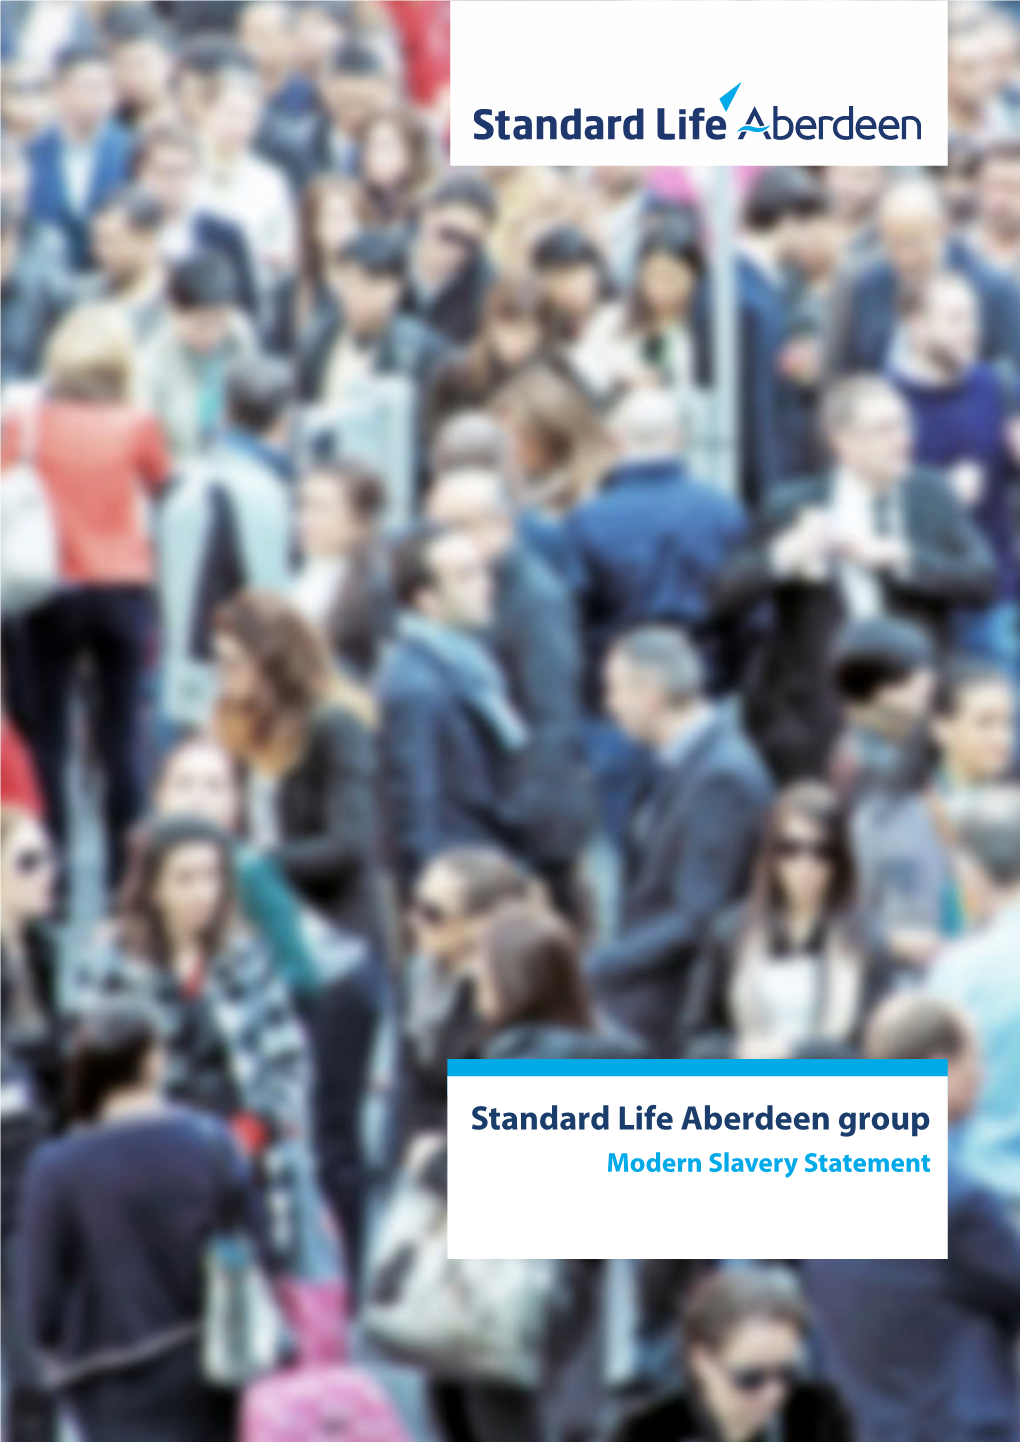 Standard Life Aberdeen Group